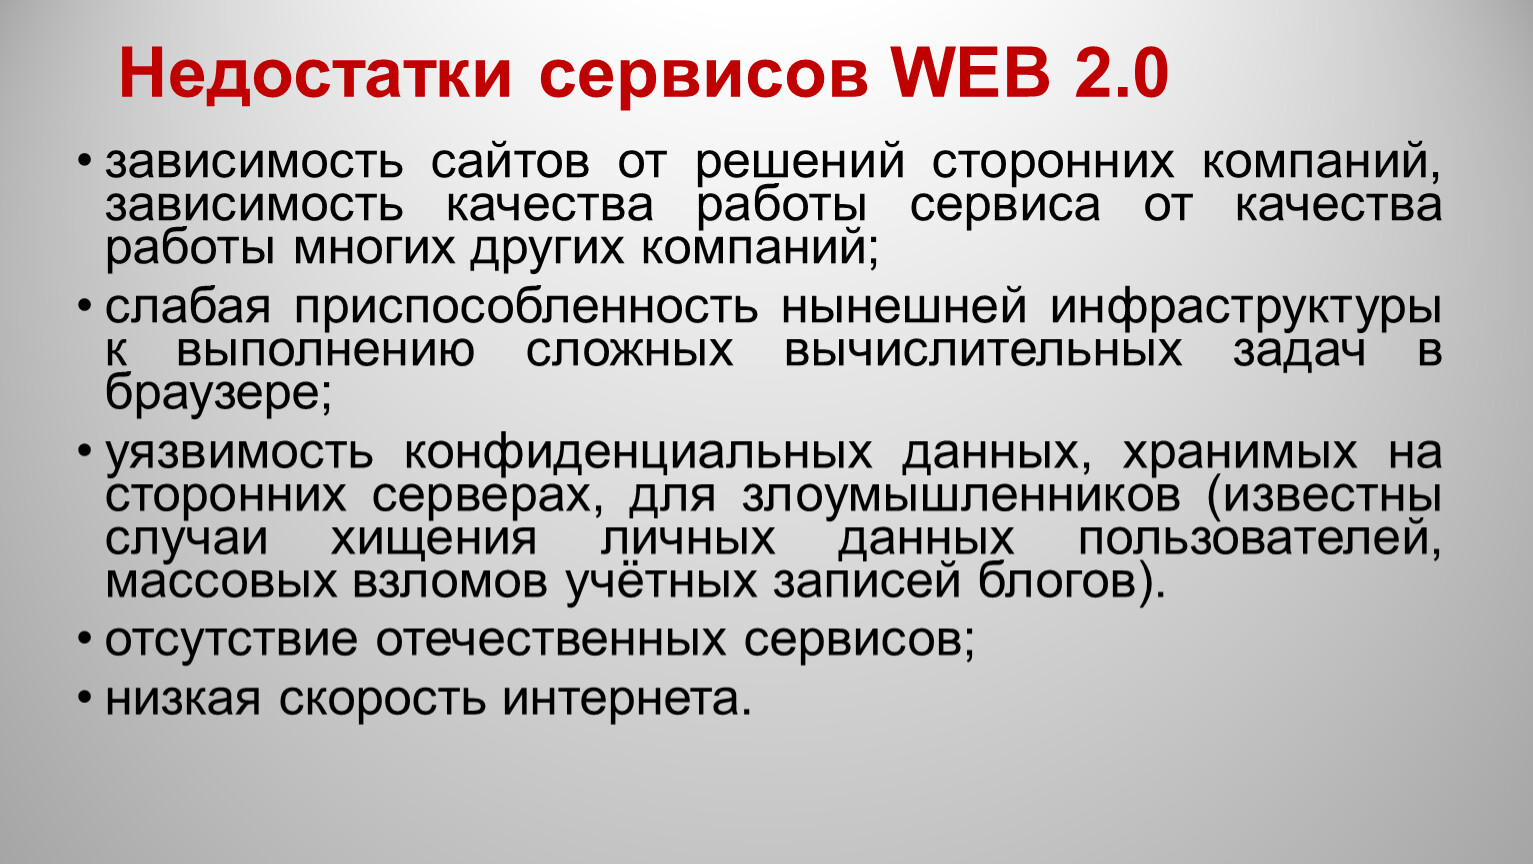 Сайт зависимость. Недостатки сервисов веб 2.0. Web 2.0 недостатки. Укажите недостатки сервисов веб 2.0. Что такое web 2.0 достоинства и недостатки.